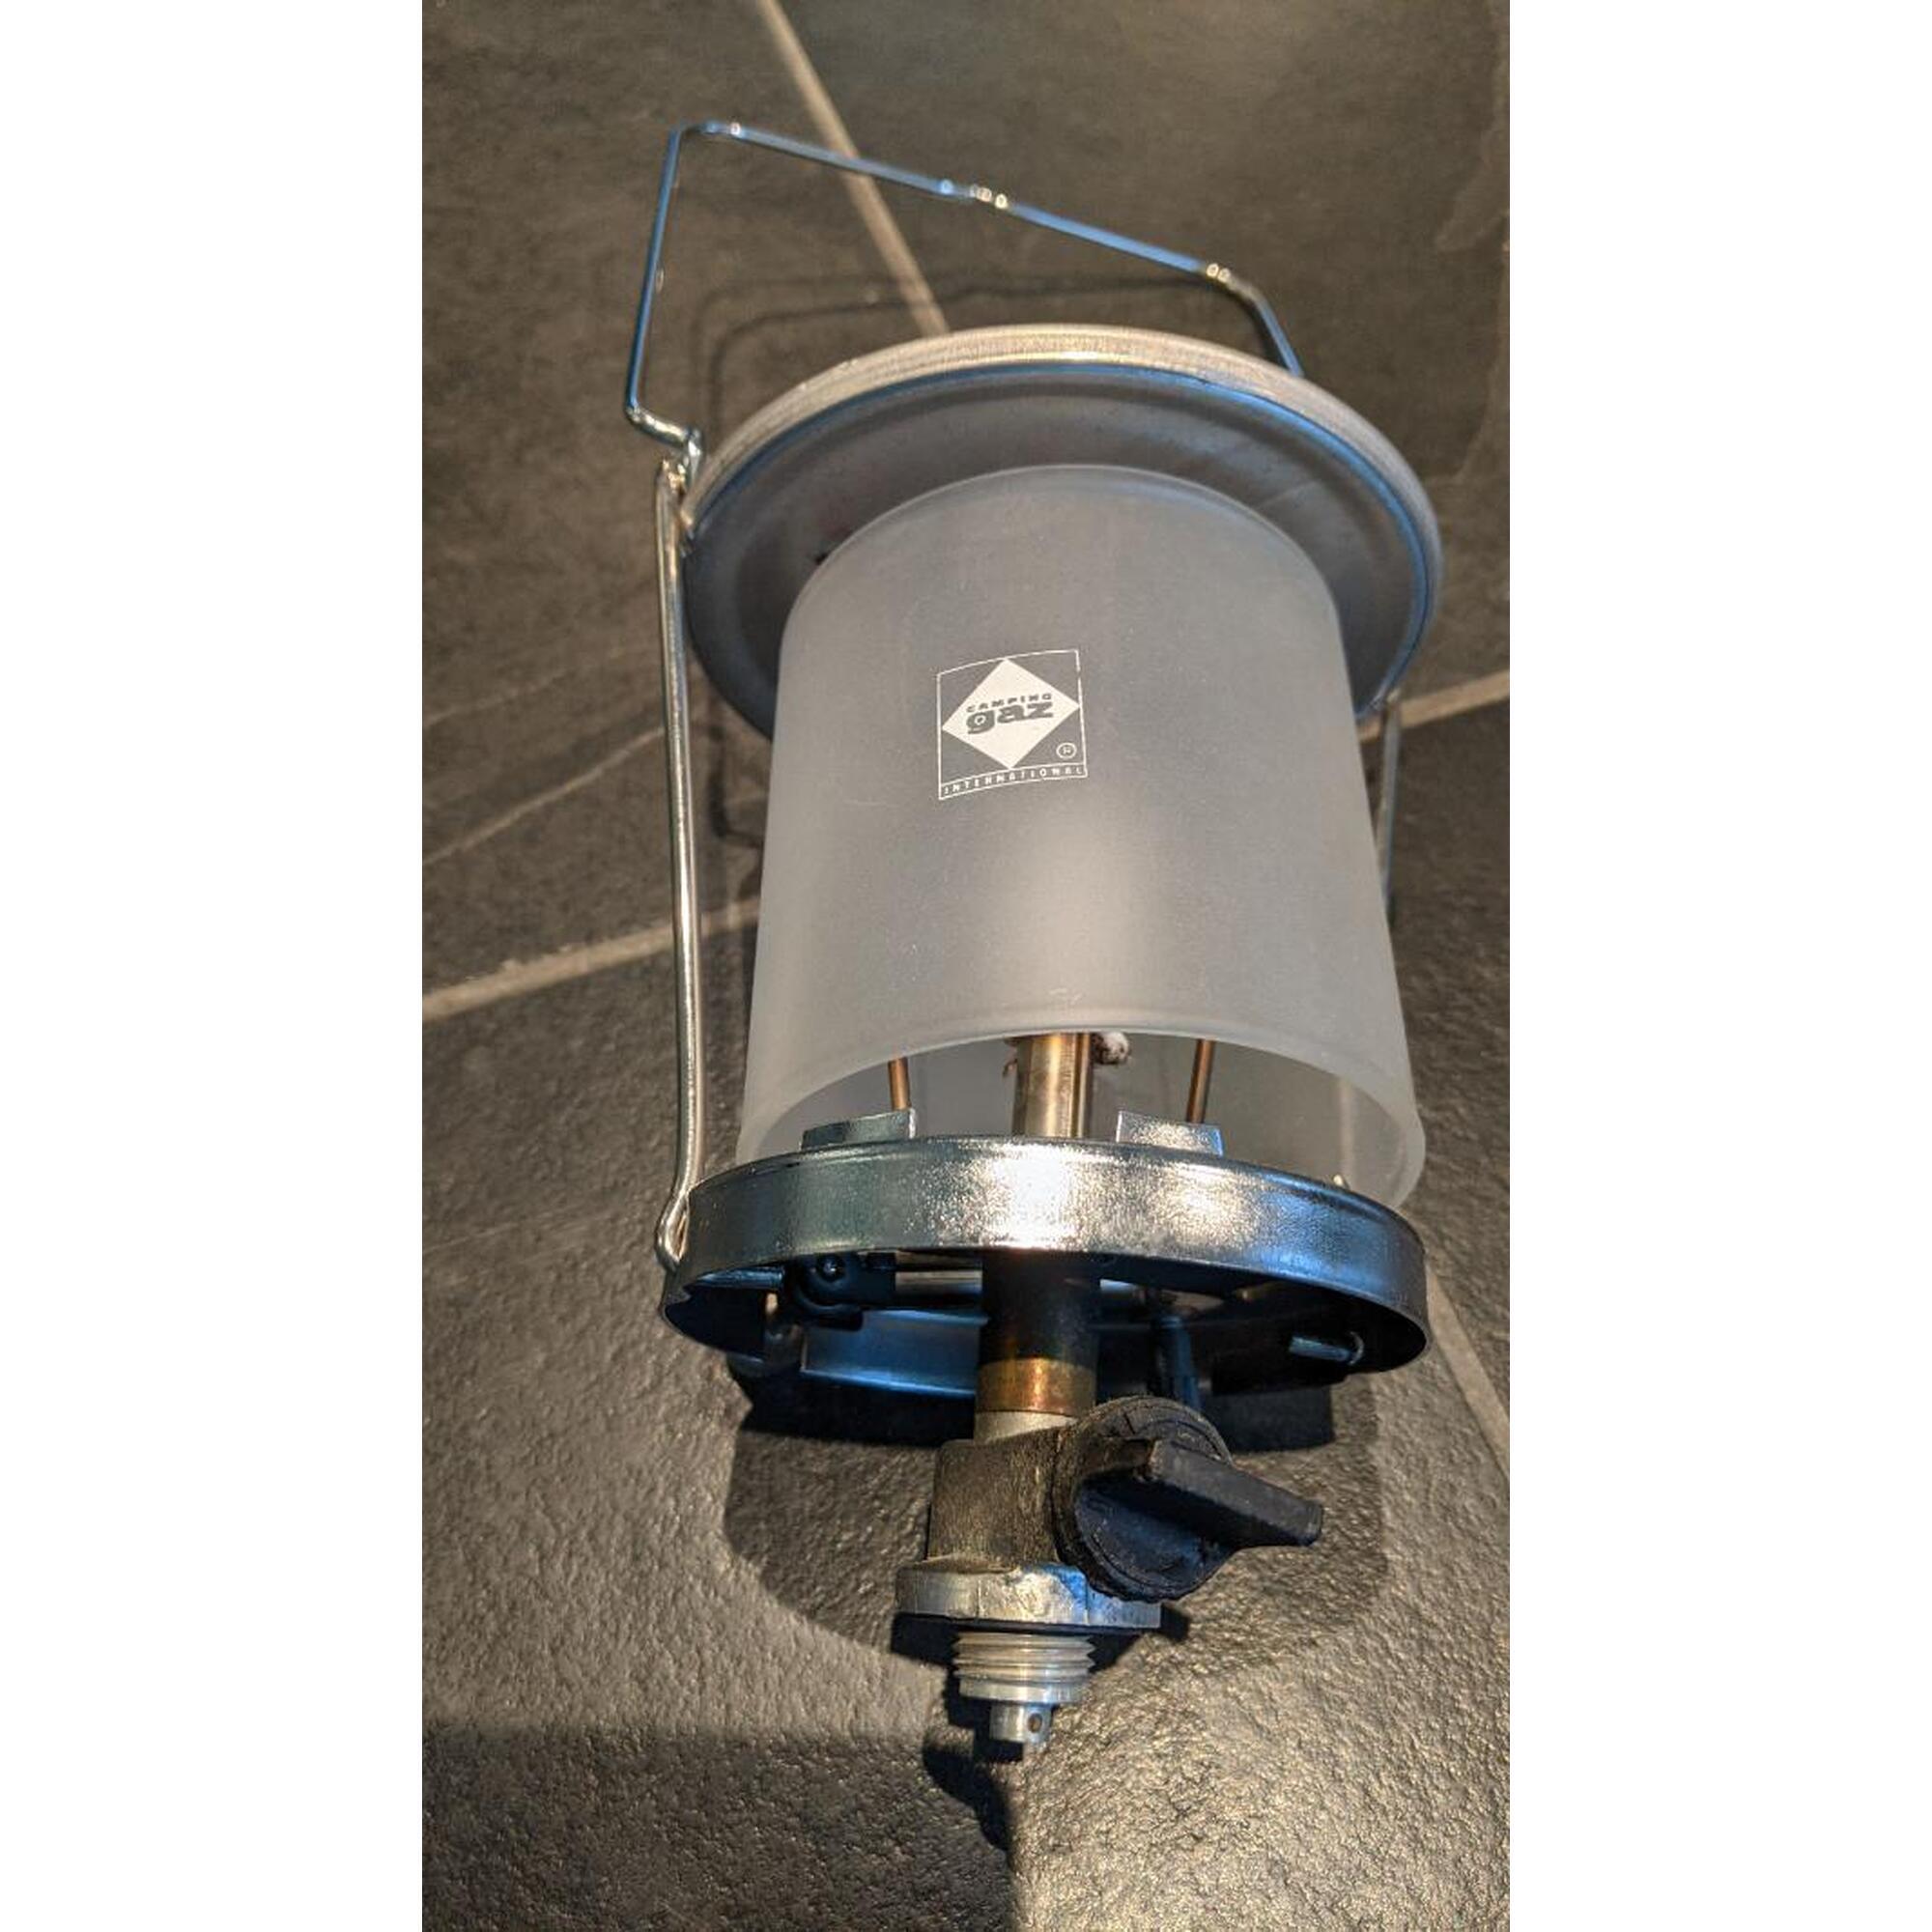 C2C - Kookvuur Campingaz Bleuet® 206 Plus met acc: vuur/lamp/windbescherming